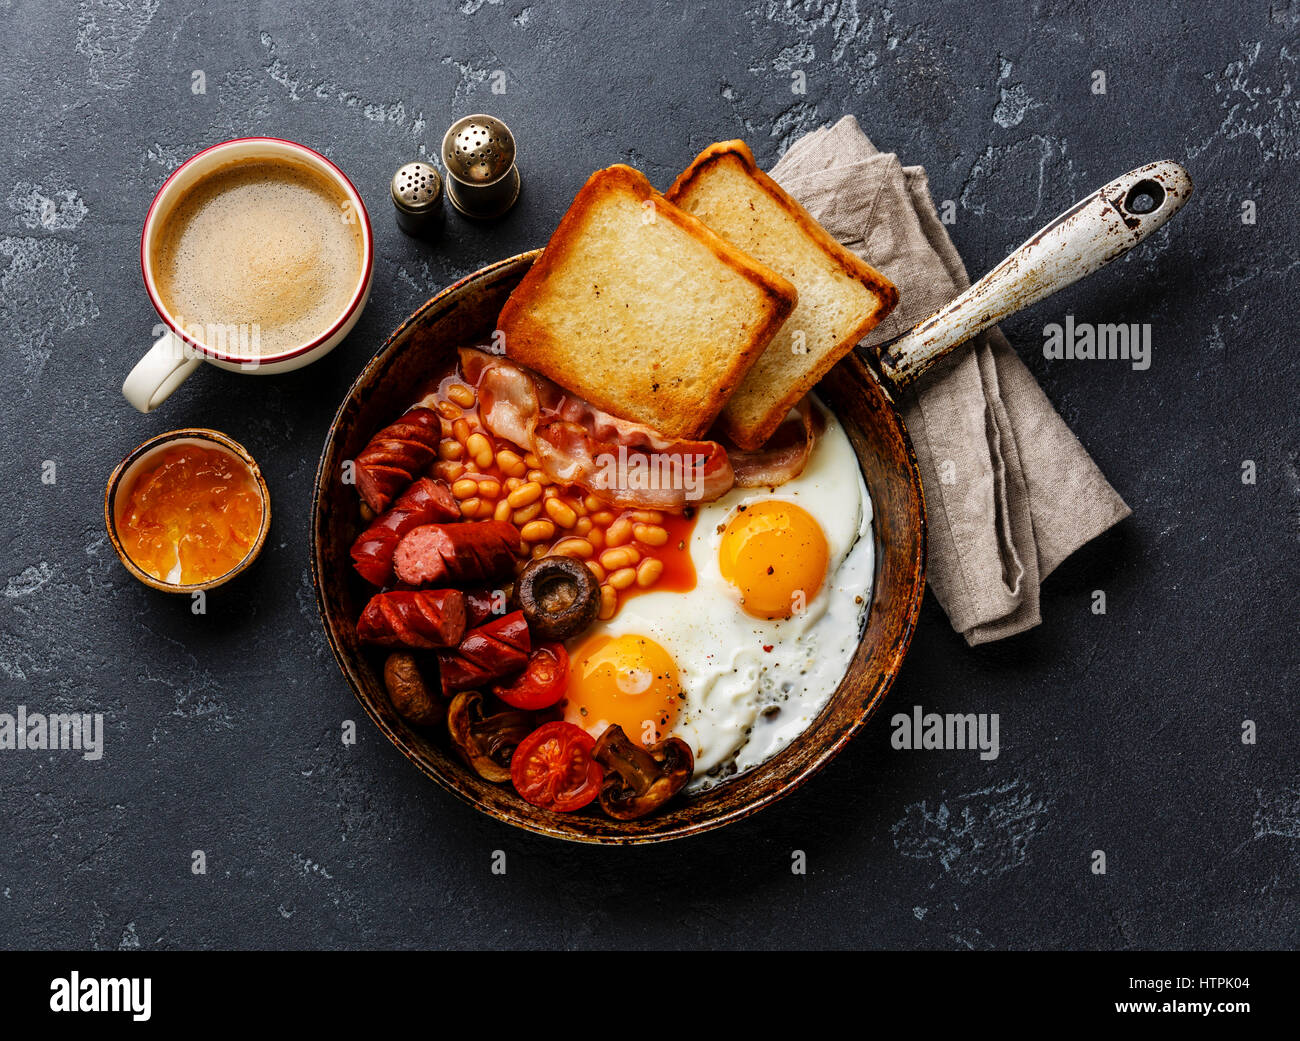 Le petit déjeuner anglais en plat de cuisson avec les œufs, saucisses, bacon, haricots, des toasts et du café à l'arrière-plan en pierre sombre Banque D'Images